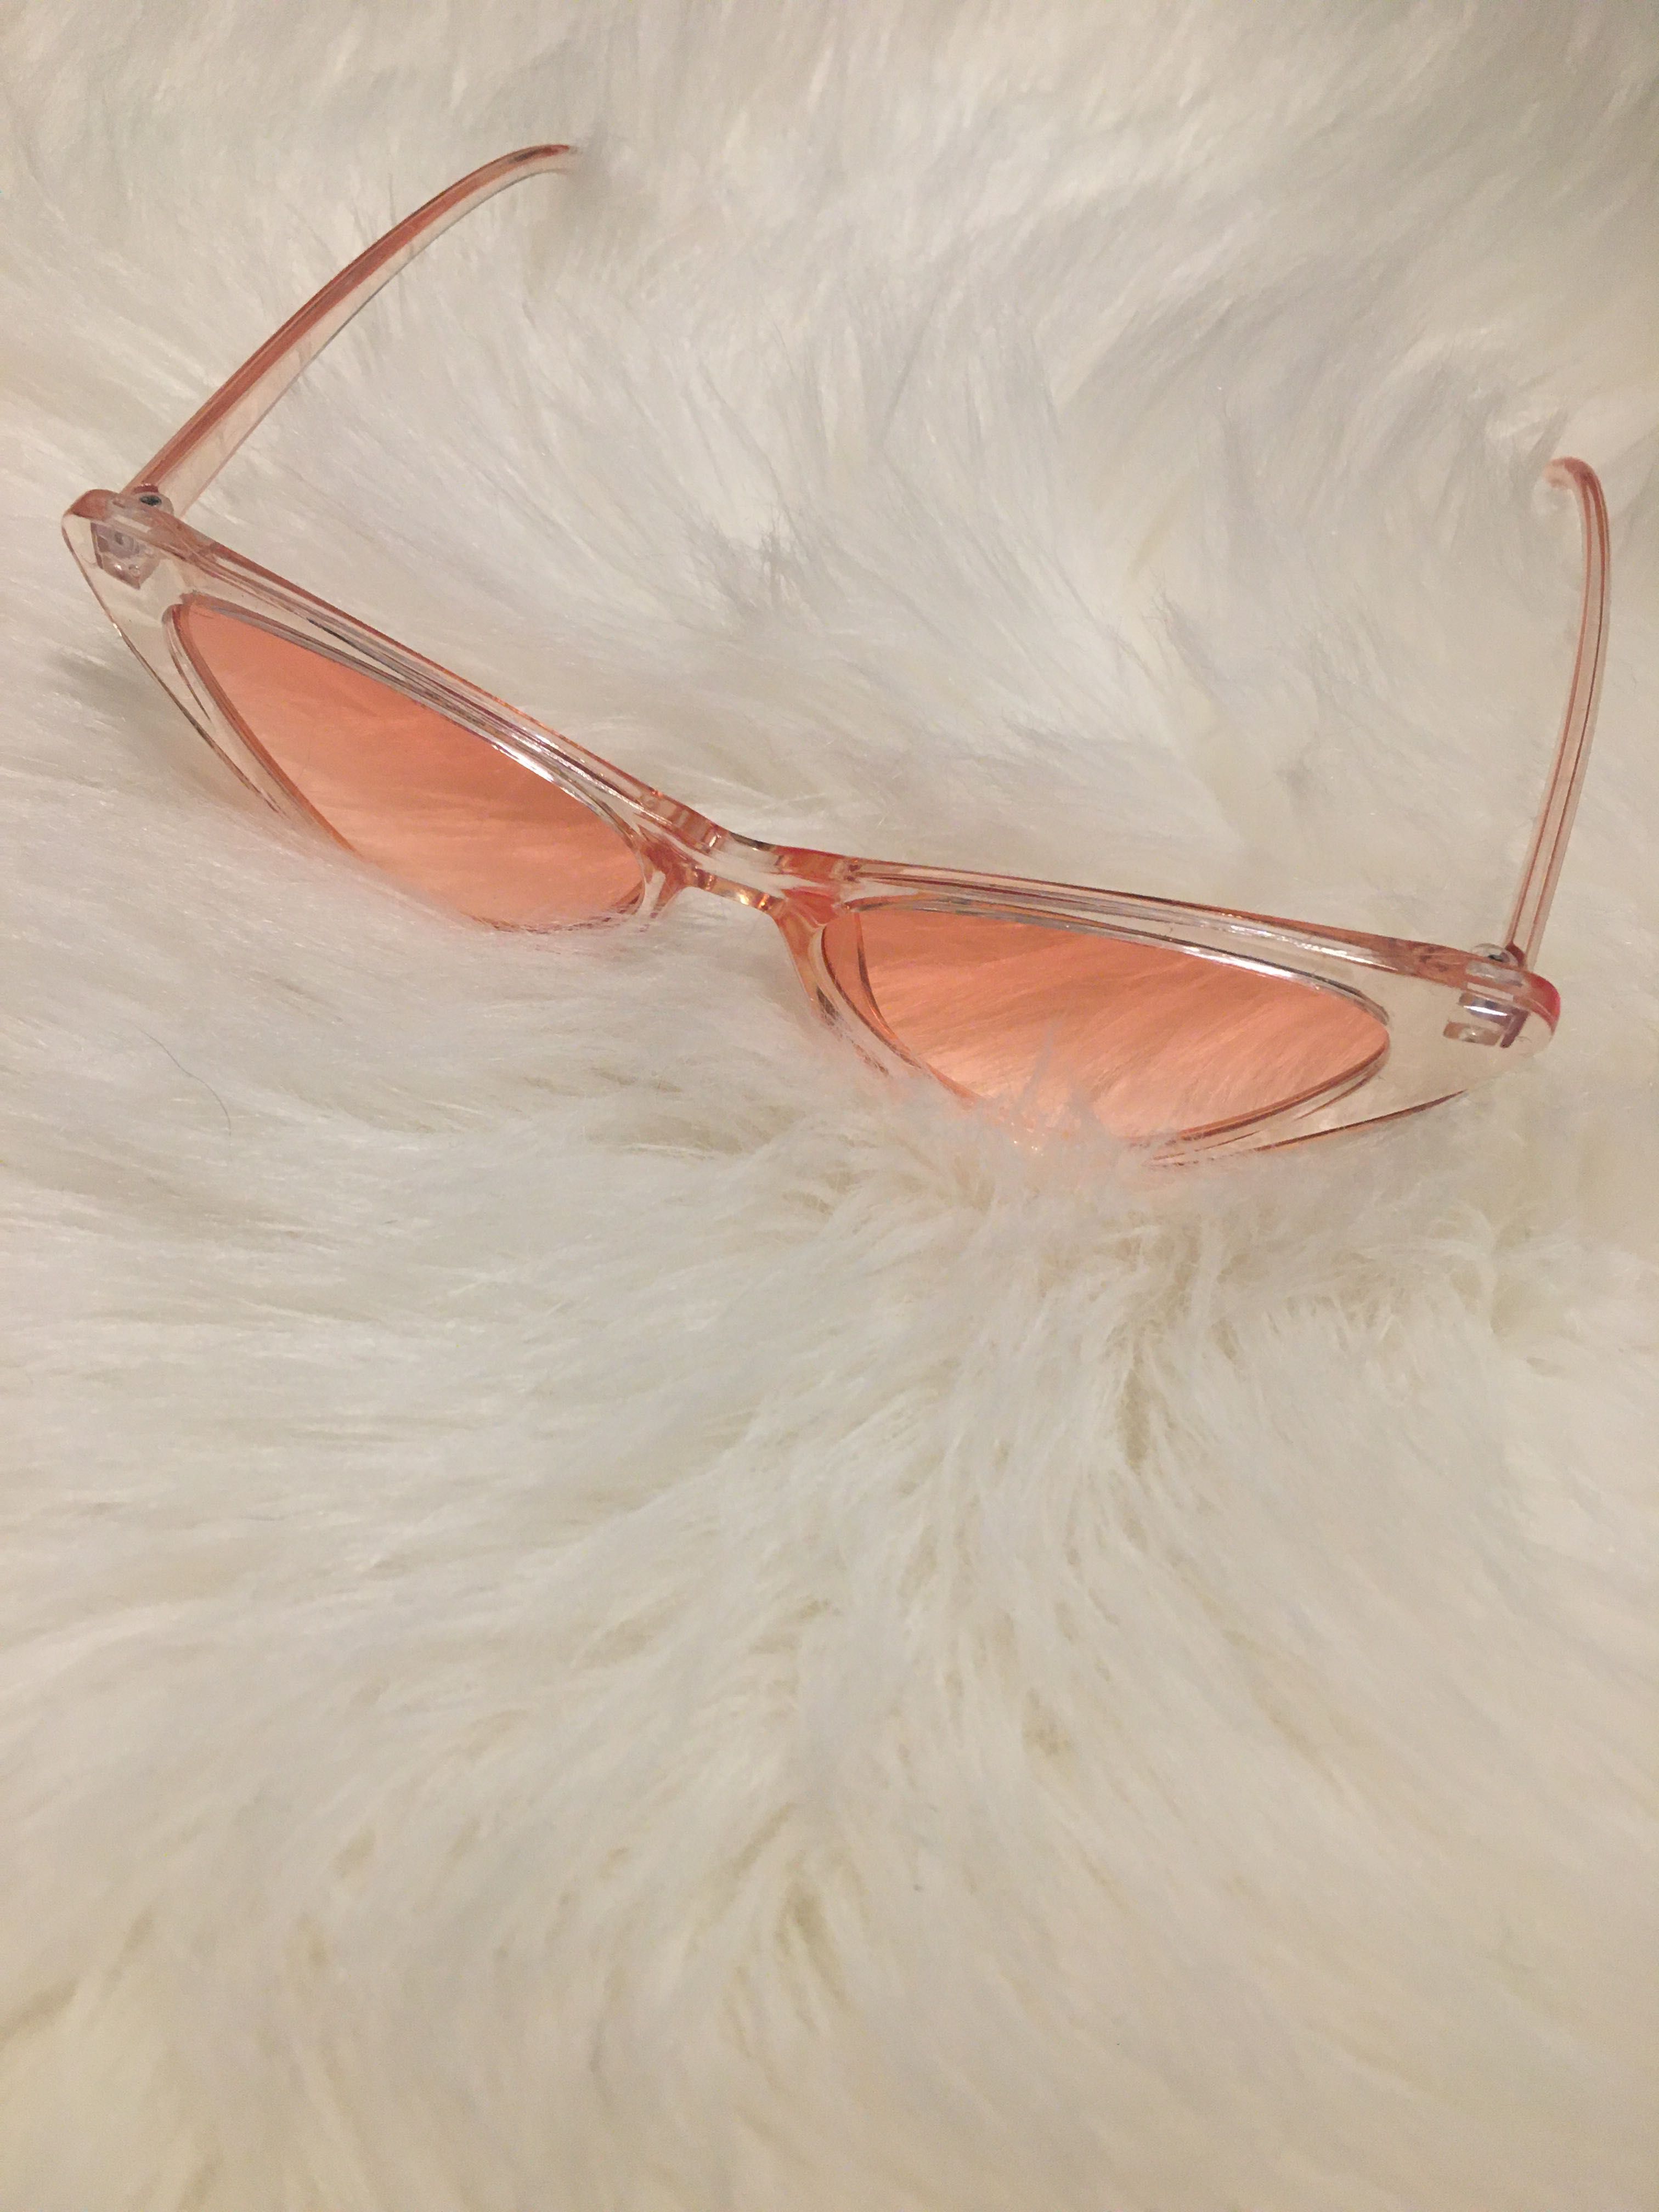 Nowe Różowe Okulary Przeciwsłoneczne Cat Eye